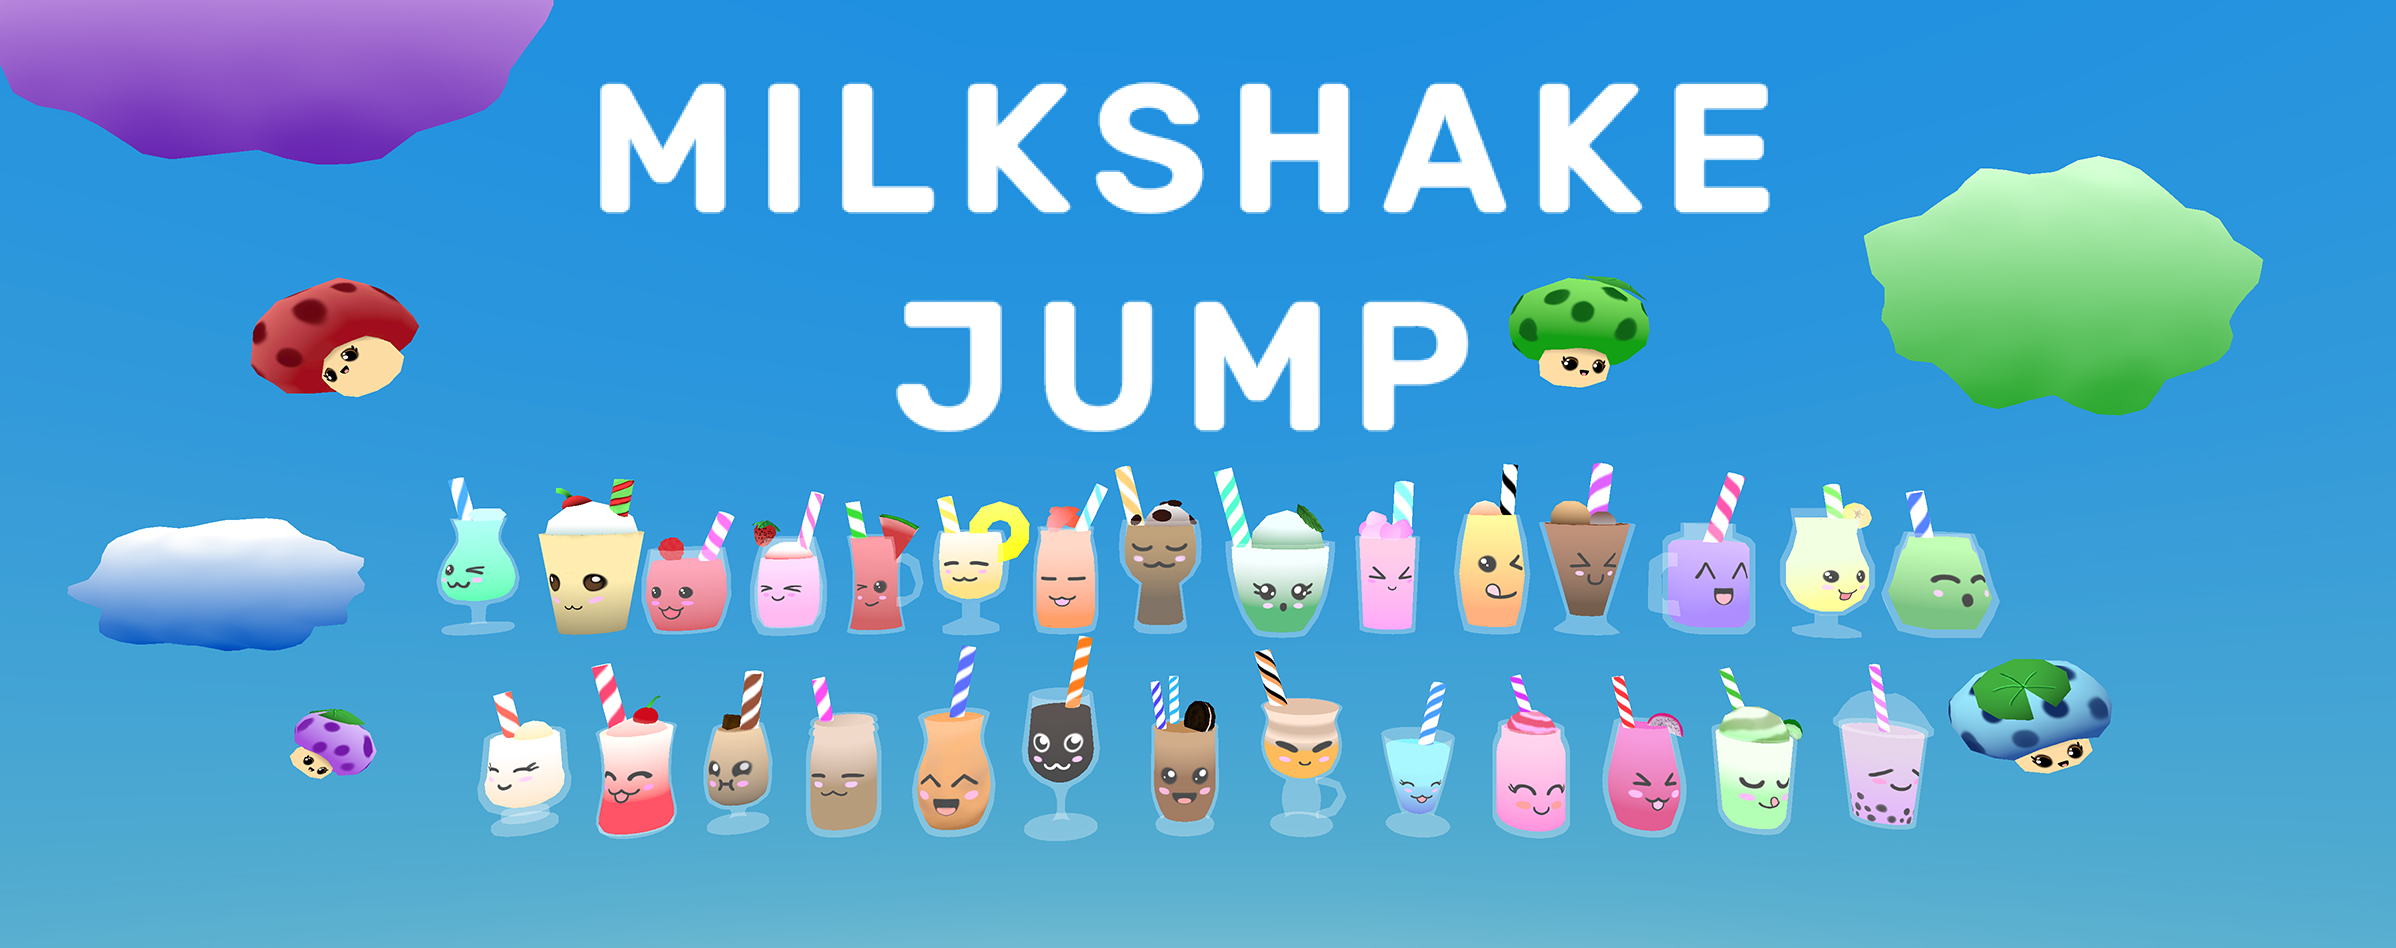 Milkshake Jump game title